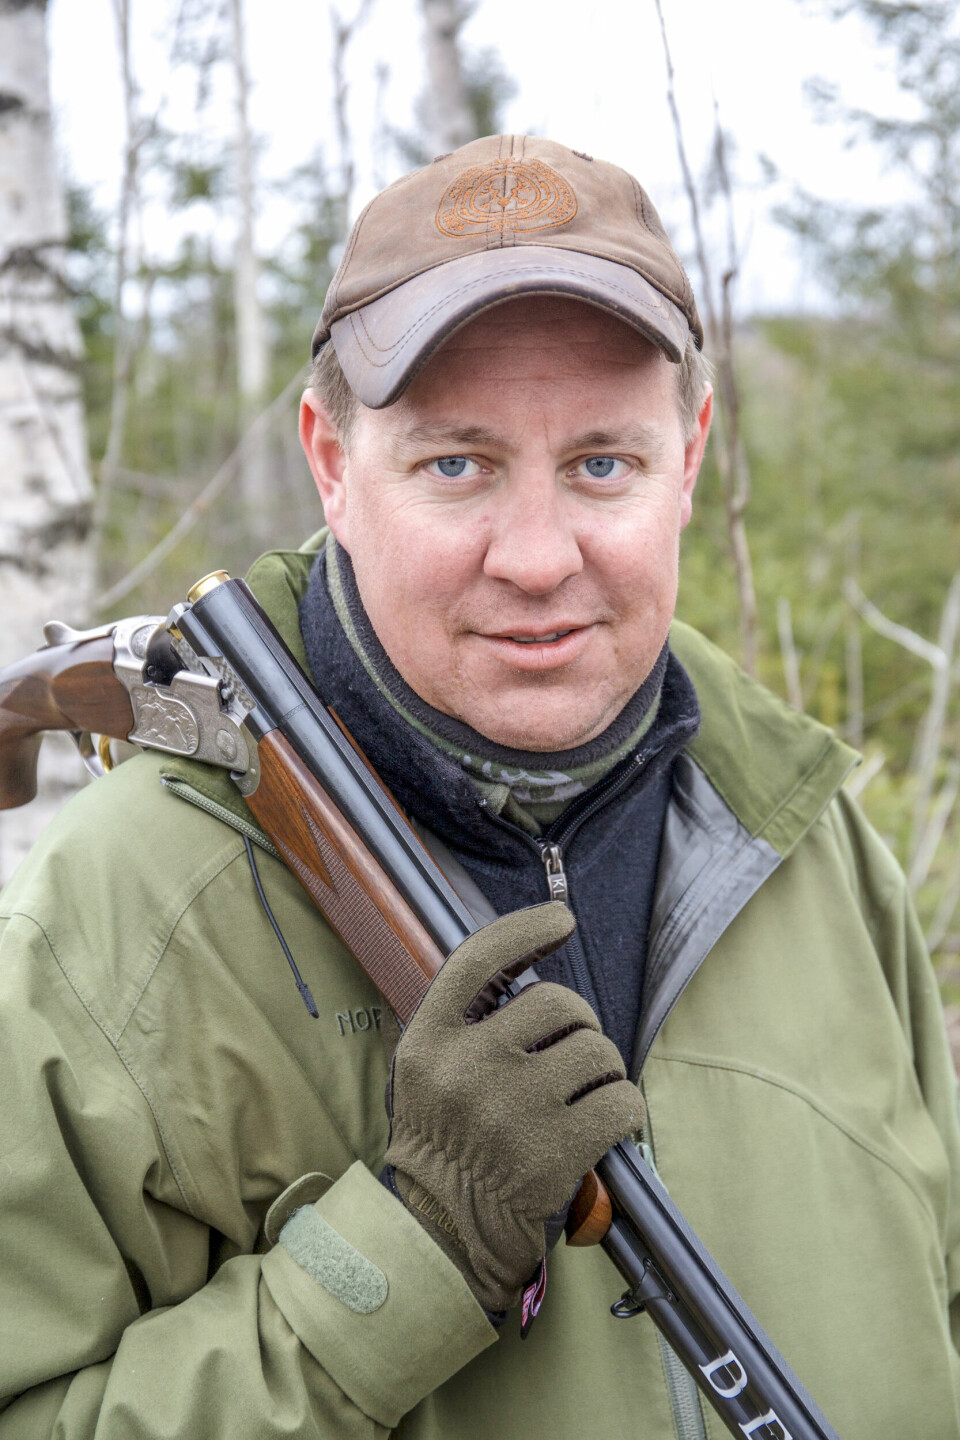 Roar Lundby i NJFF er jaktkonsulent med ansvar for utdanningen av forbundets jakthundinstruktører.